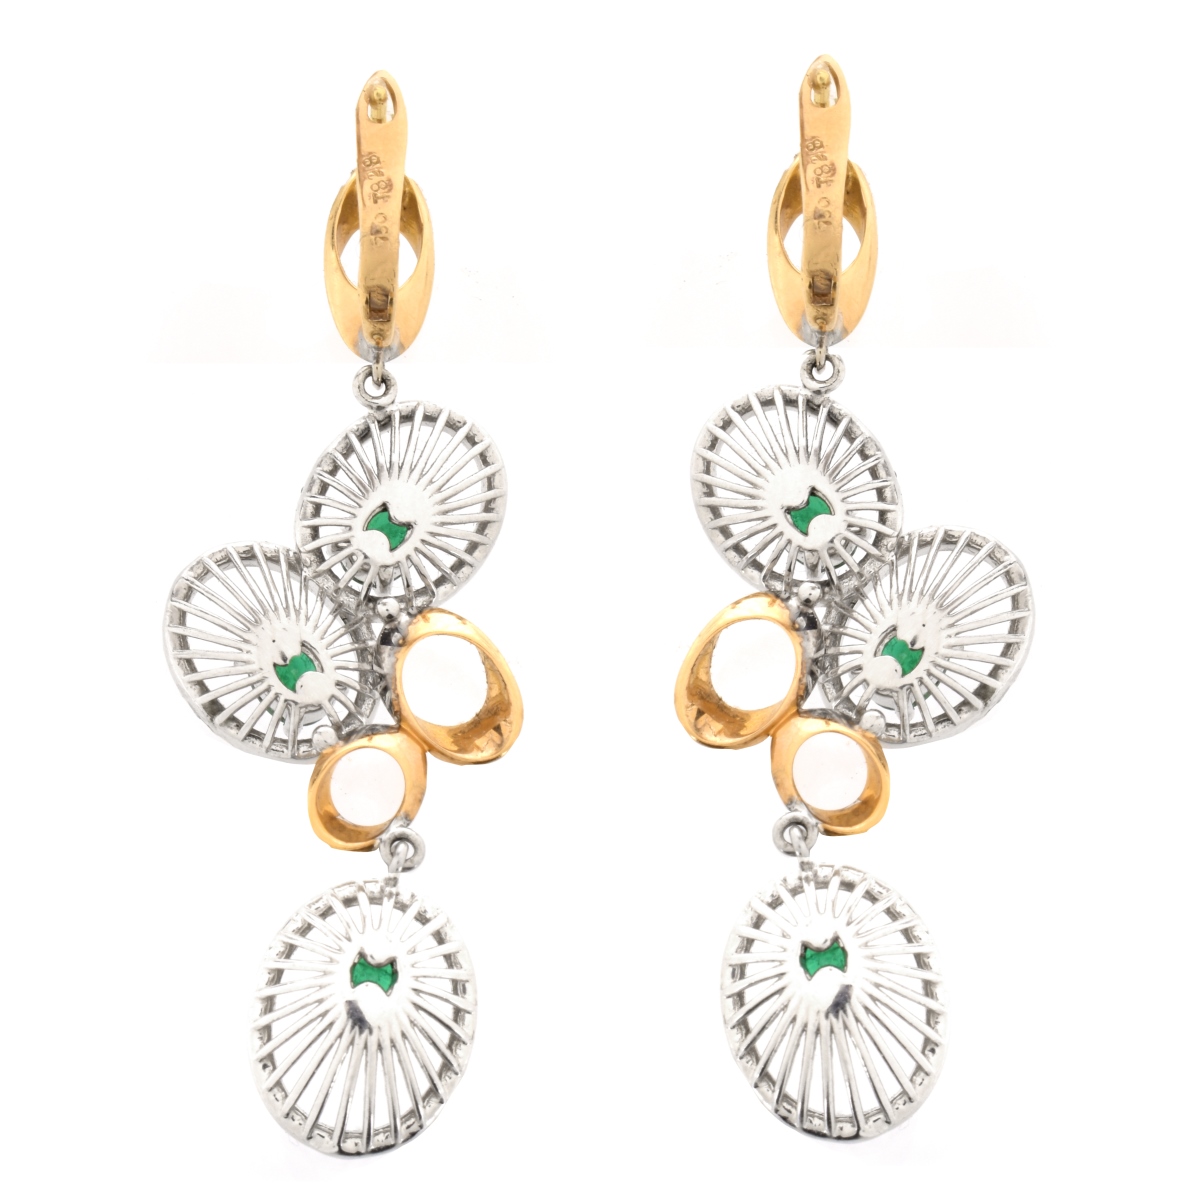 Emerald, Diamond and 18K Earrings. - Image 3 of 5